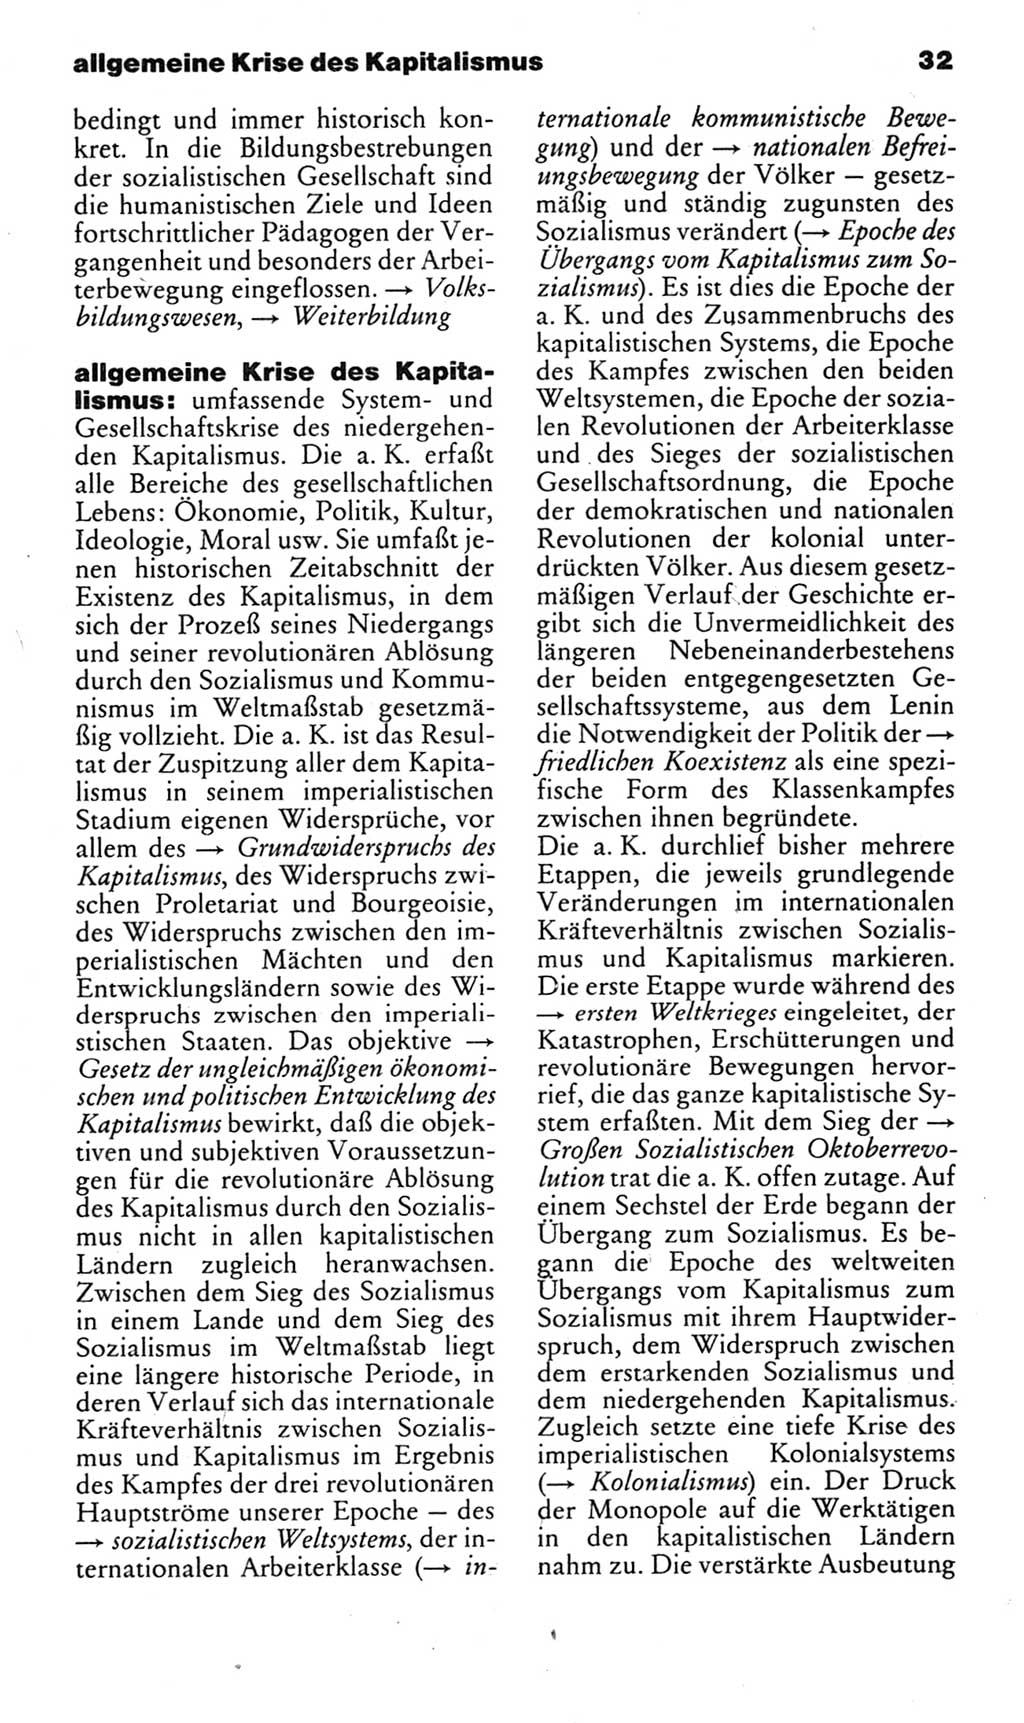 Kleines politisches Wörterbuch [Deutsche Demokratische Republik (DDR)] 1985, Seite 32 (Kl. pol. Wb. DDR 1985, S. 32)